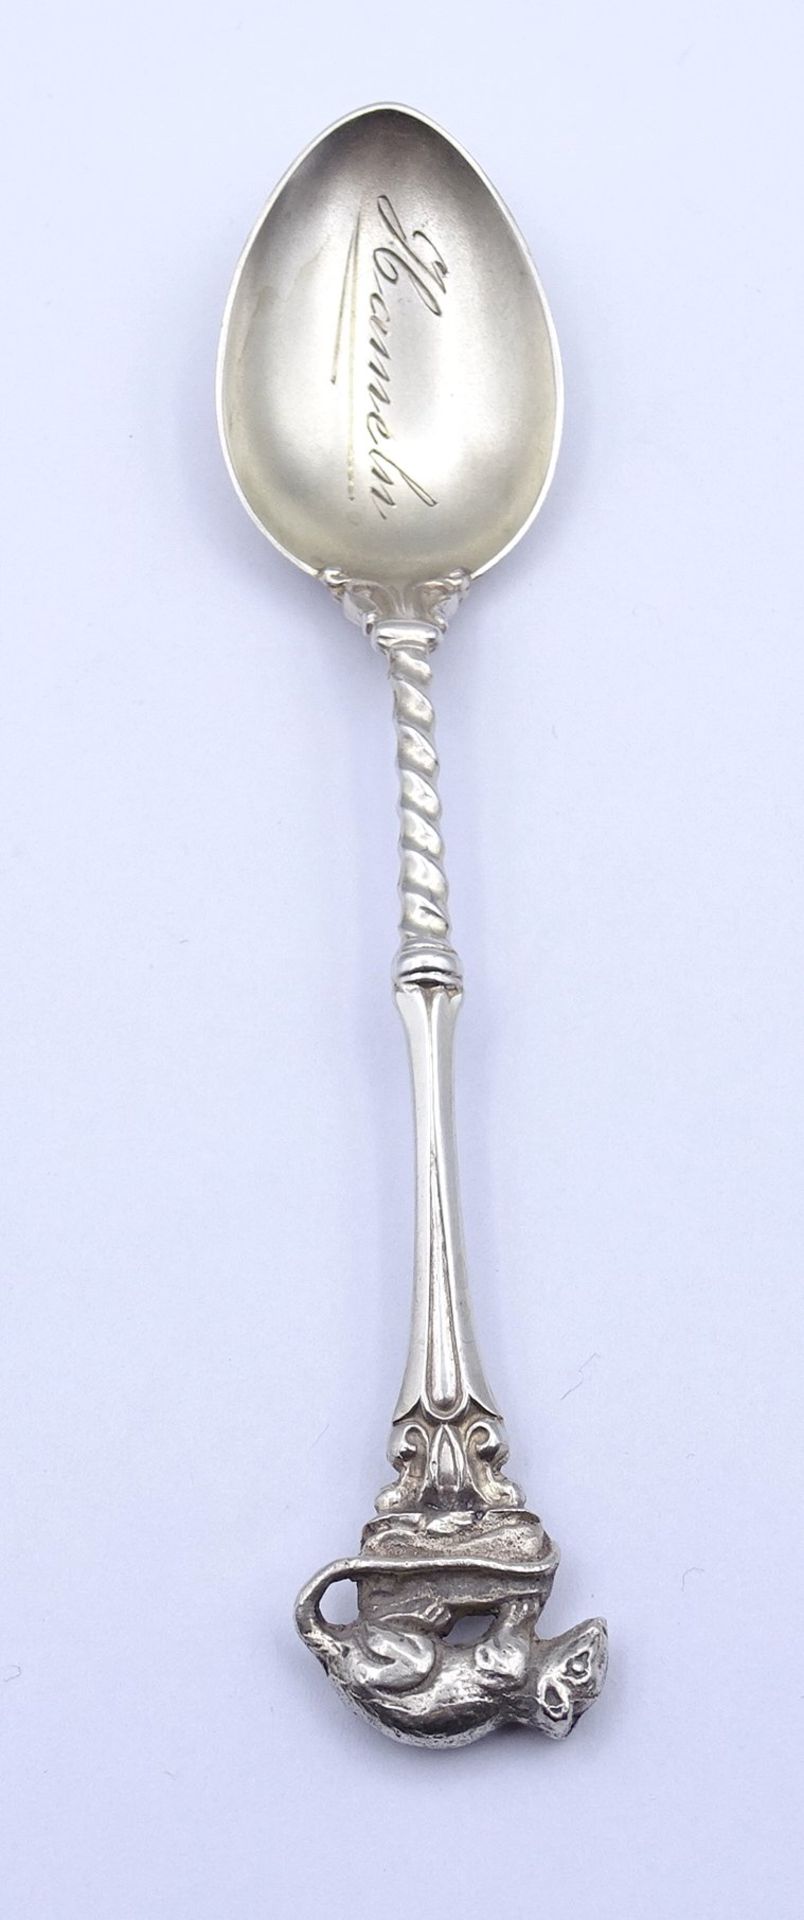 Einzelner Teelöffel, Silber 0.800, mit aufgesetzter Ratte , "bez. Hameln 1930", L. 11,0cm, 13,3g. - Image 2 of 5